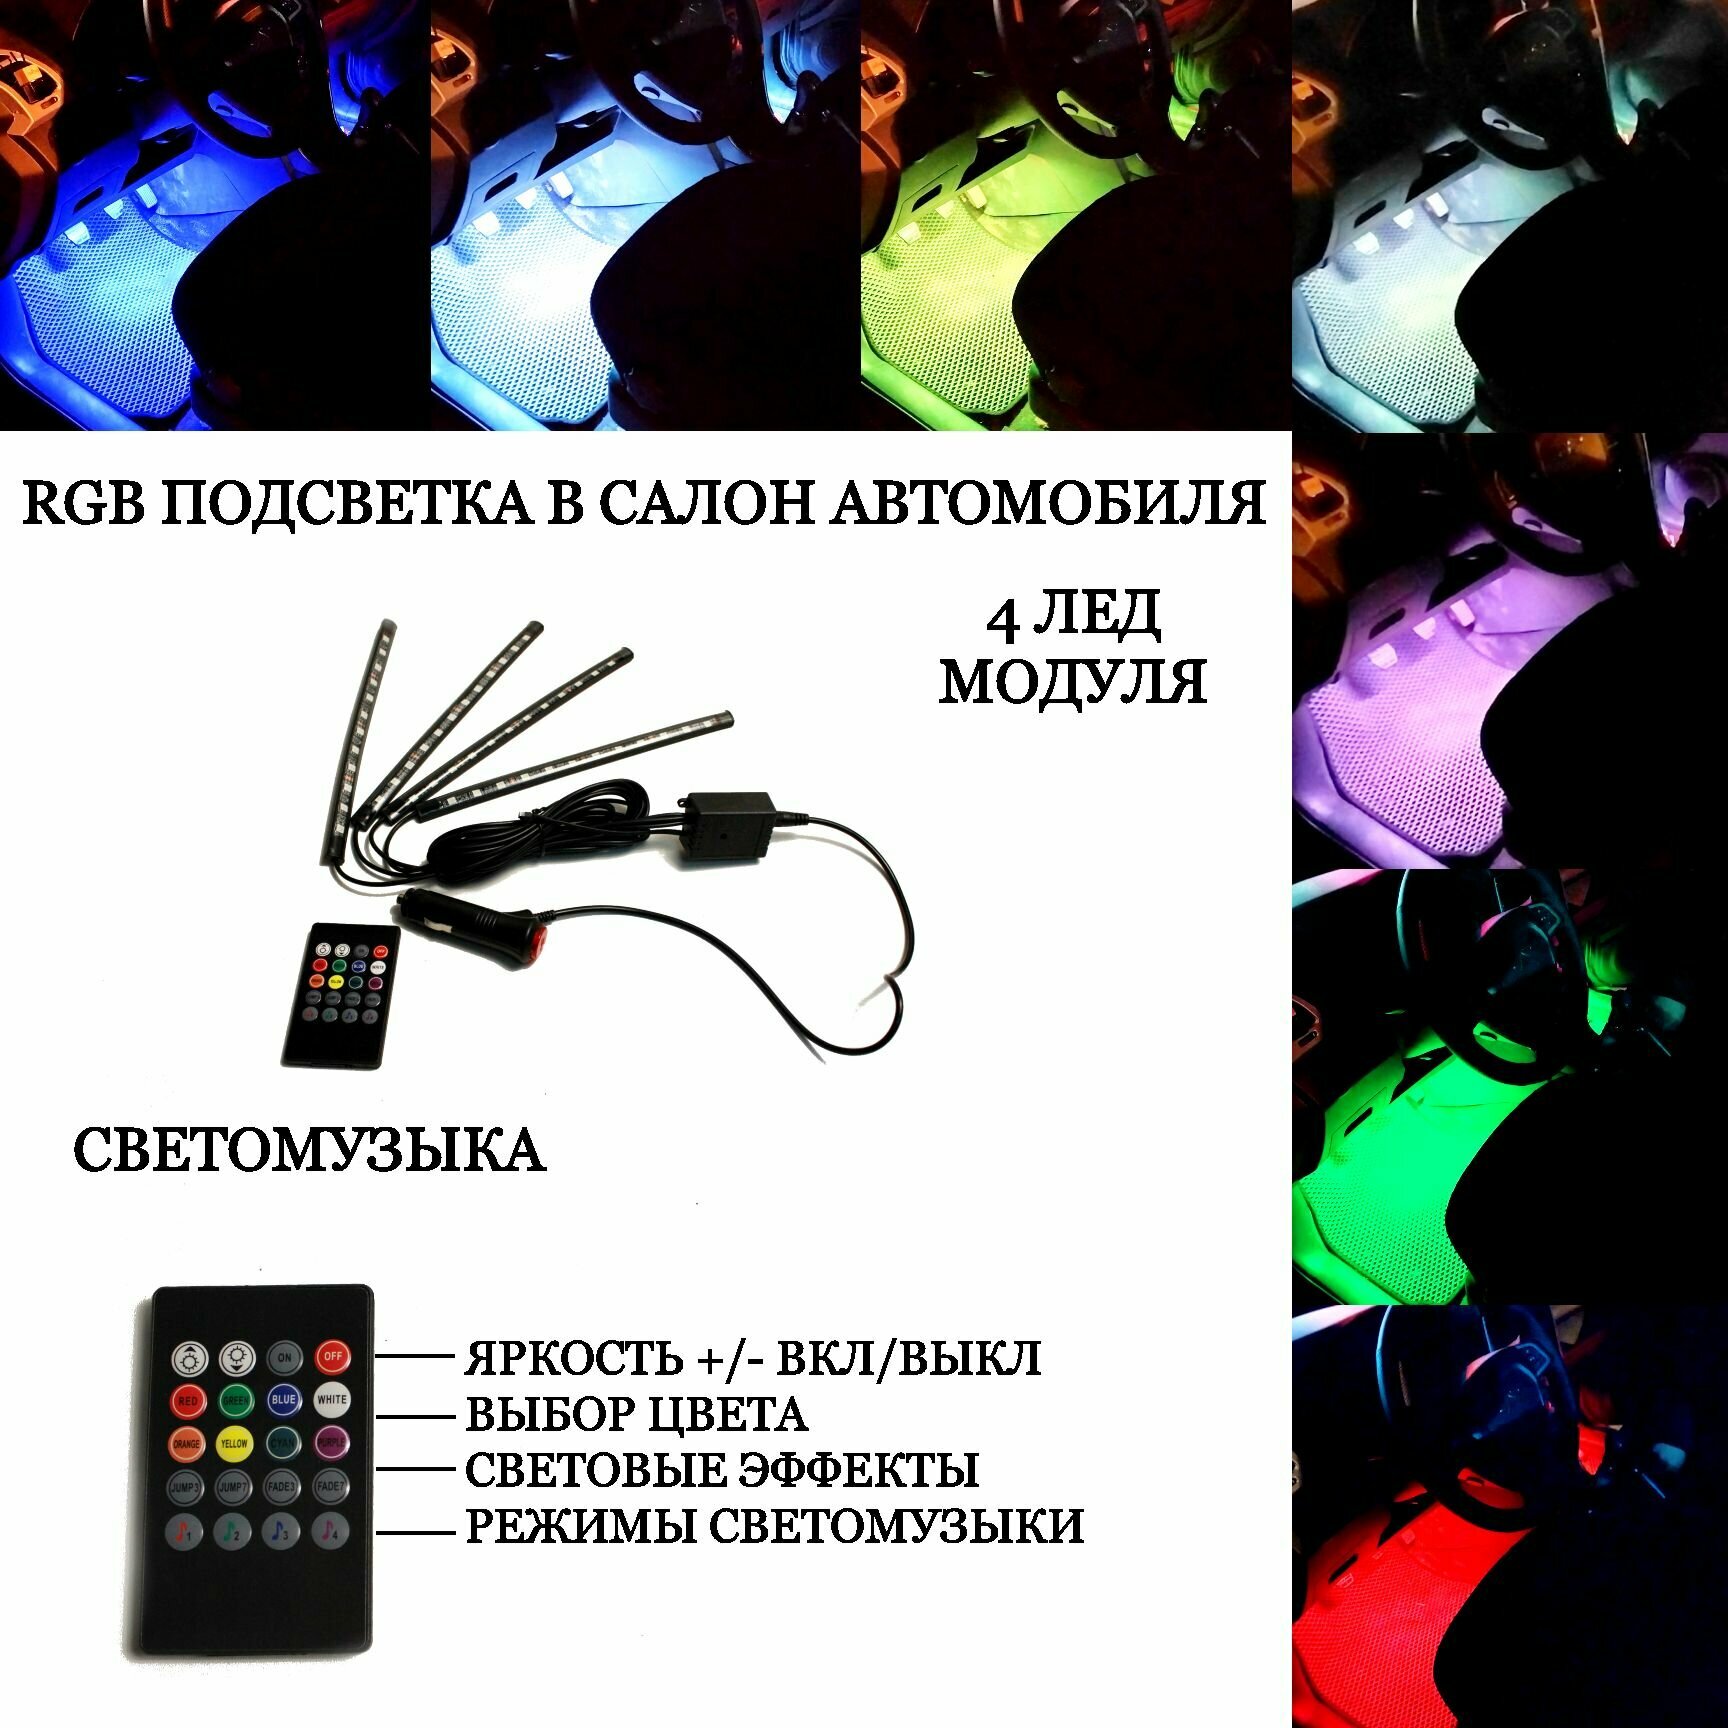 Подсветка салона автомобиля RGB  светомузыка 4 led модуля